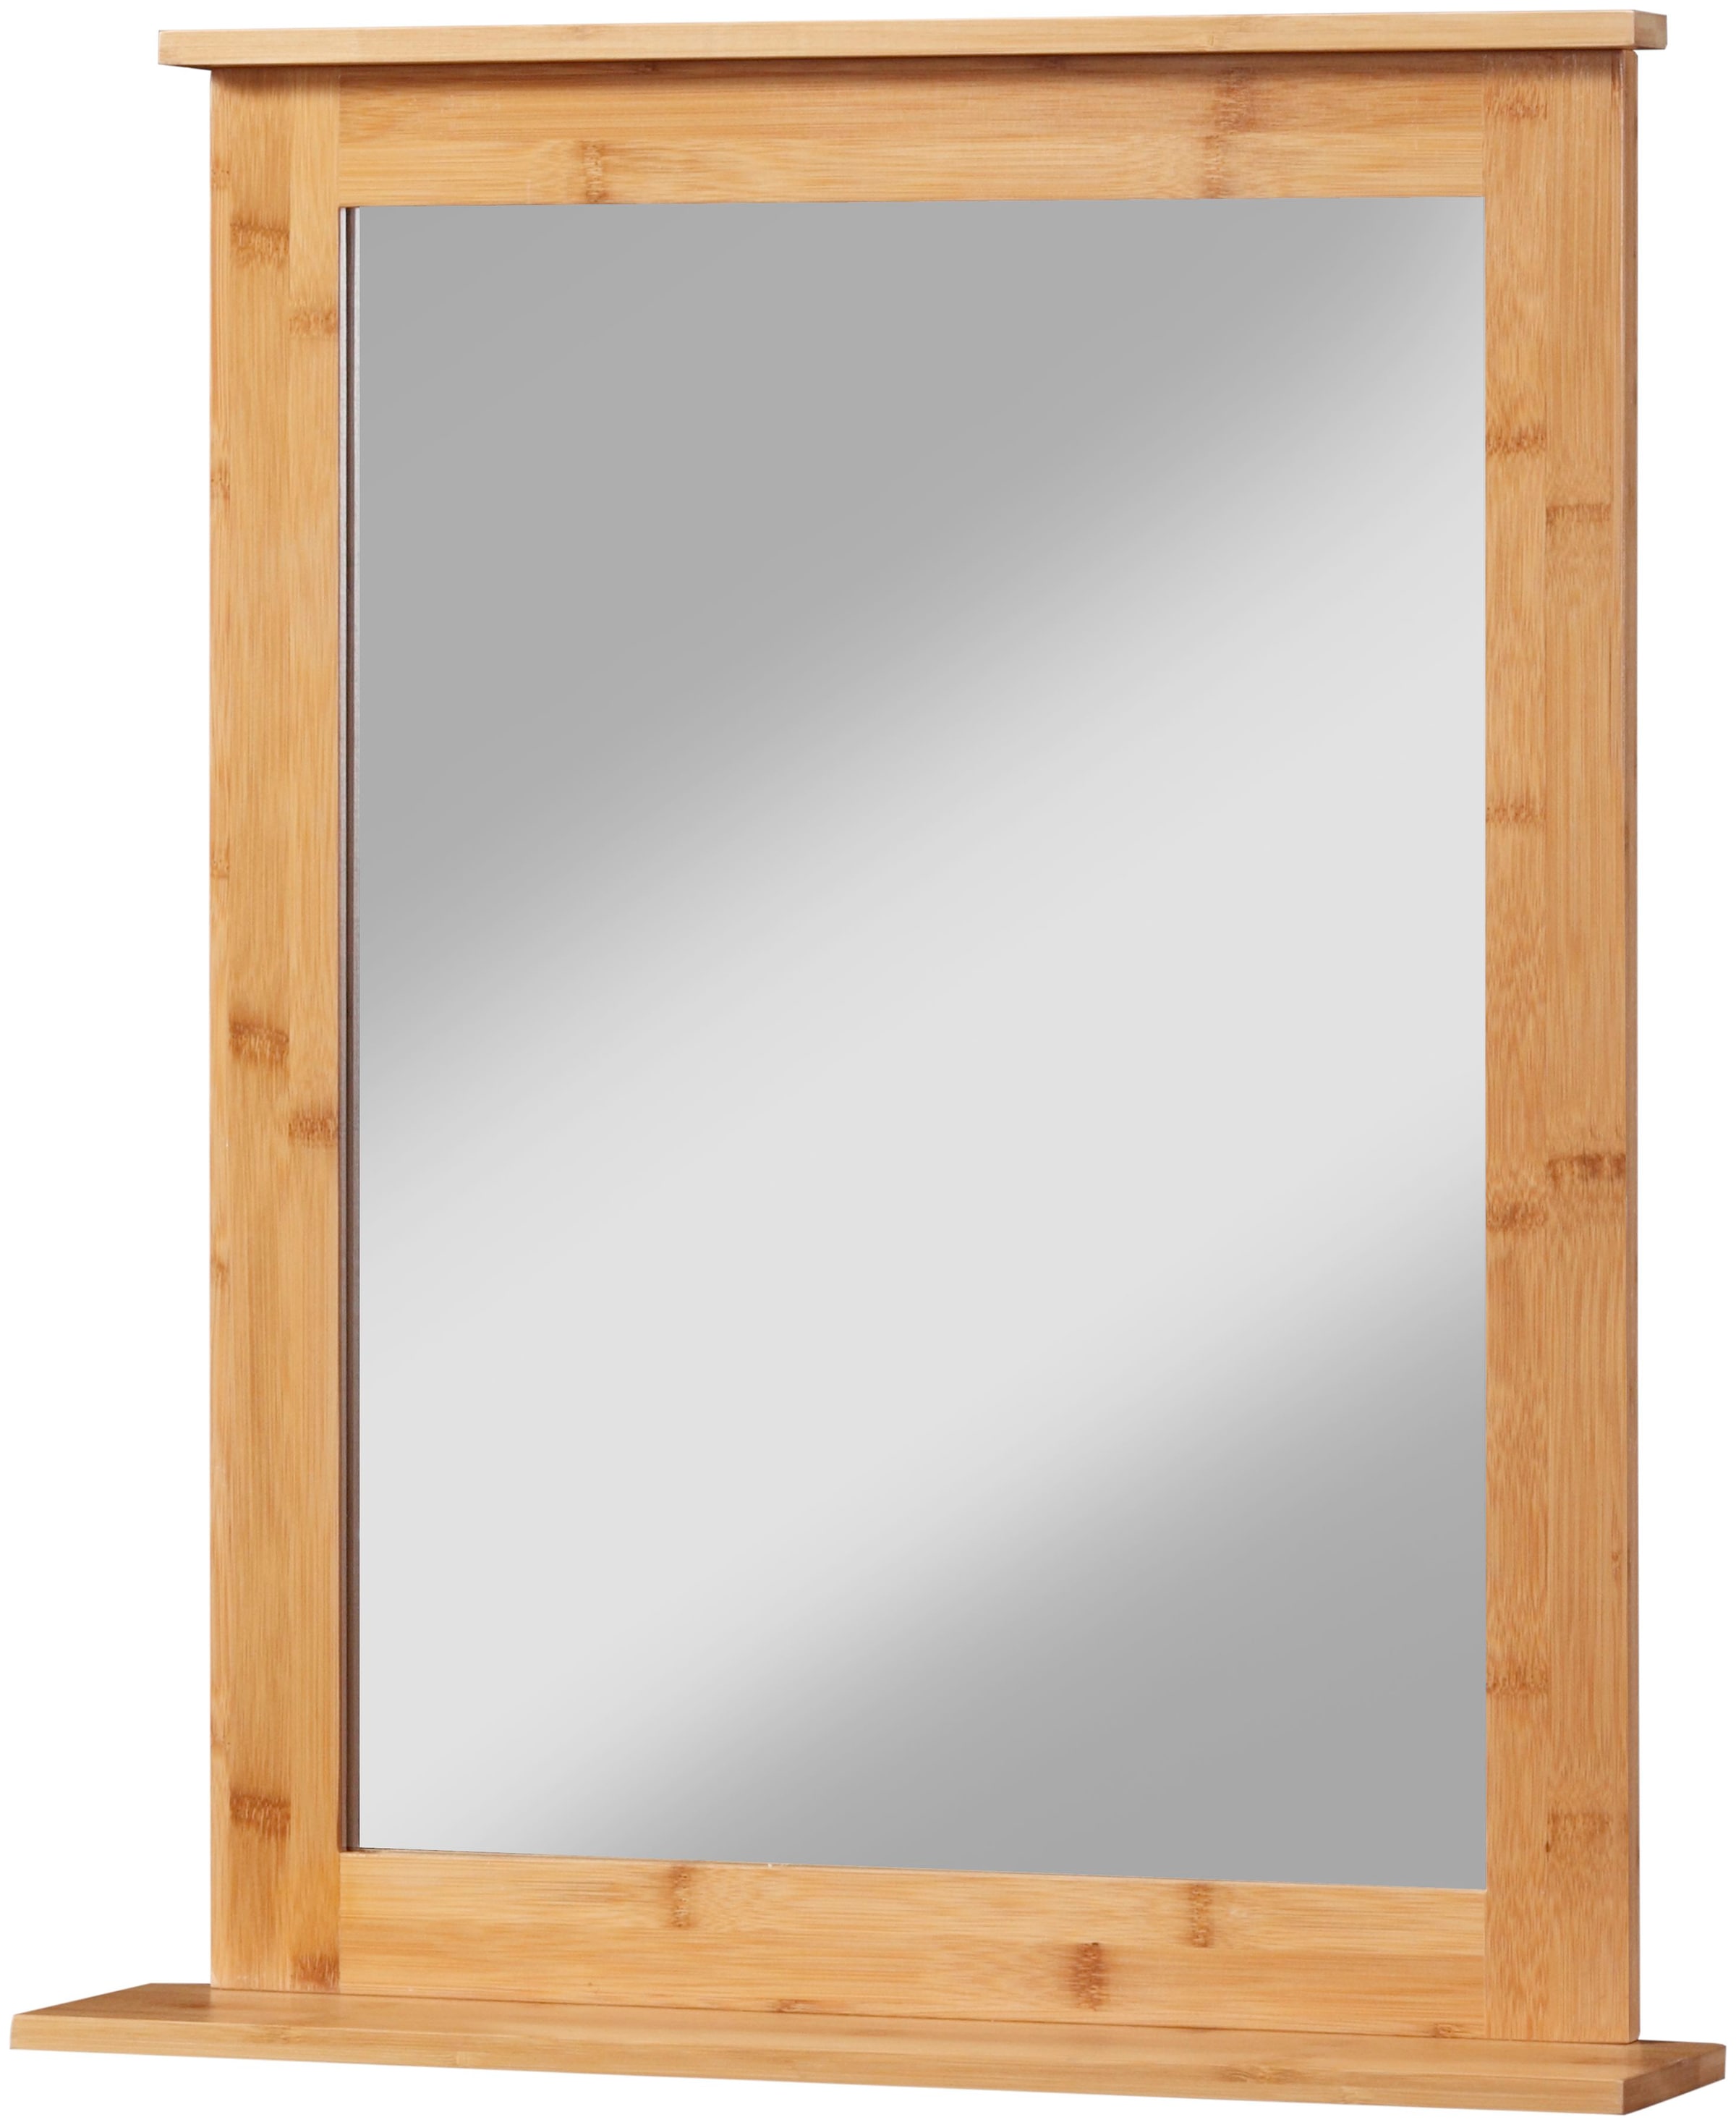 Badspiegel »Bambus New«, Badezimmerspiegel mit Bambus-Rahmen, eckig 58x70cm